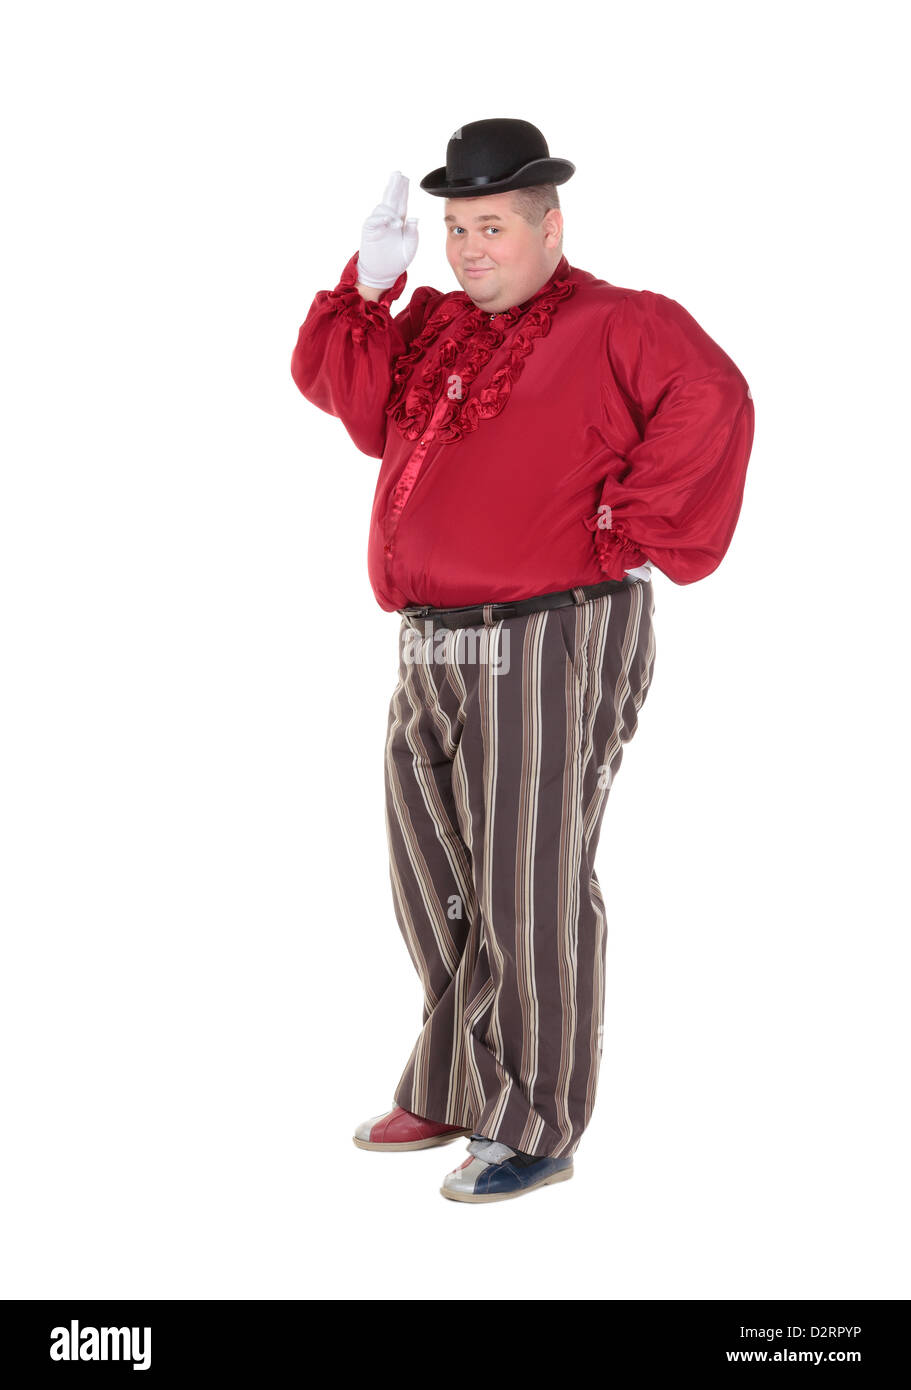 Sehr dicker Mann in einem roten Entertainer Kostüm und Bowler Hut, isoliert  auf weiss Stockfotografie - Alamy